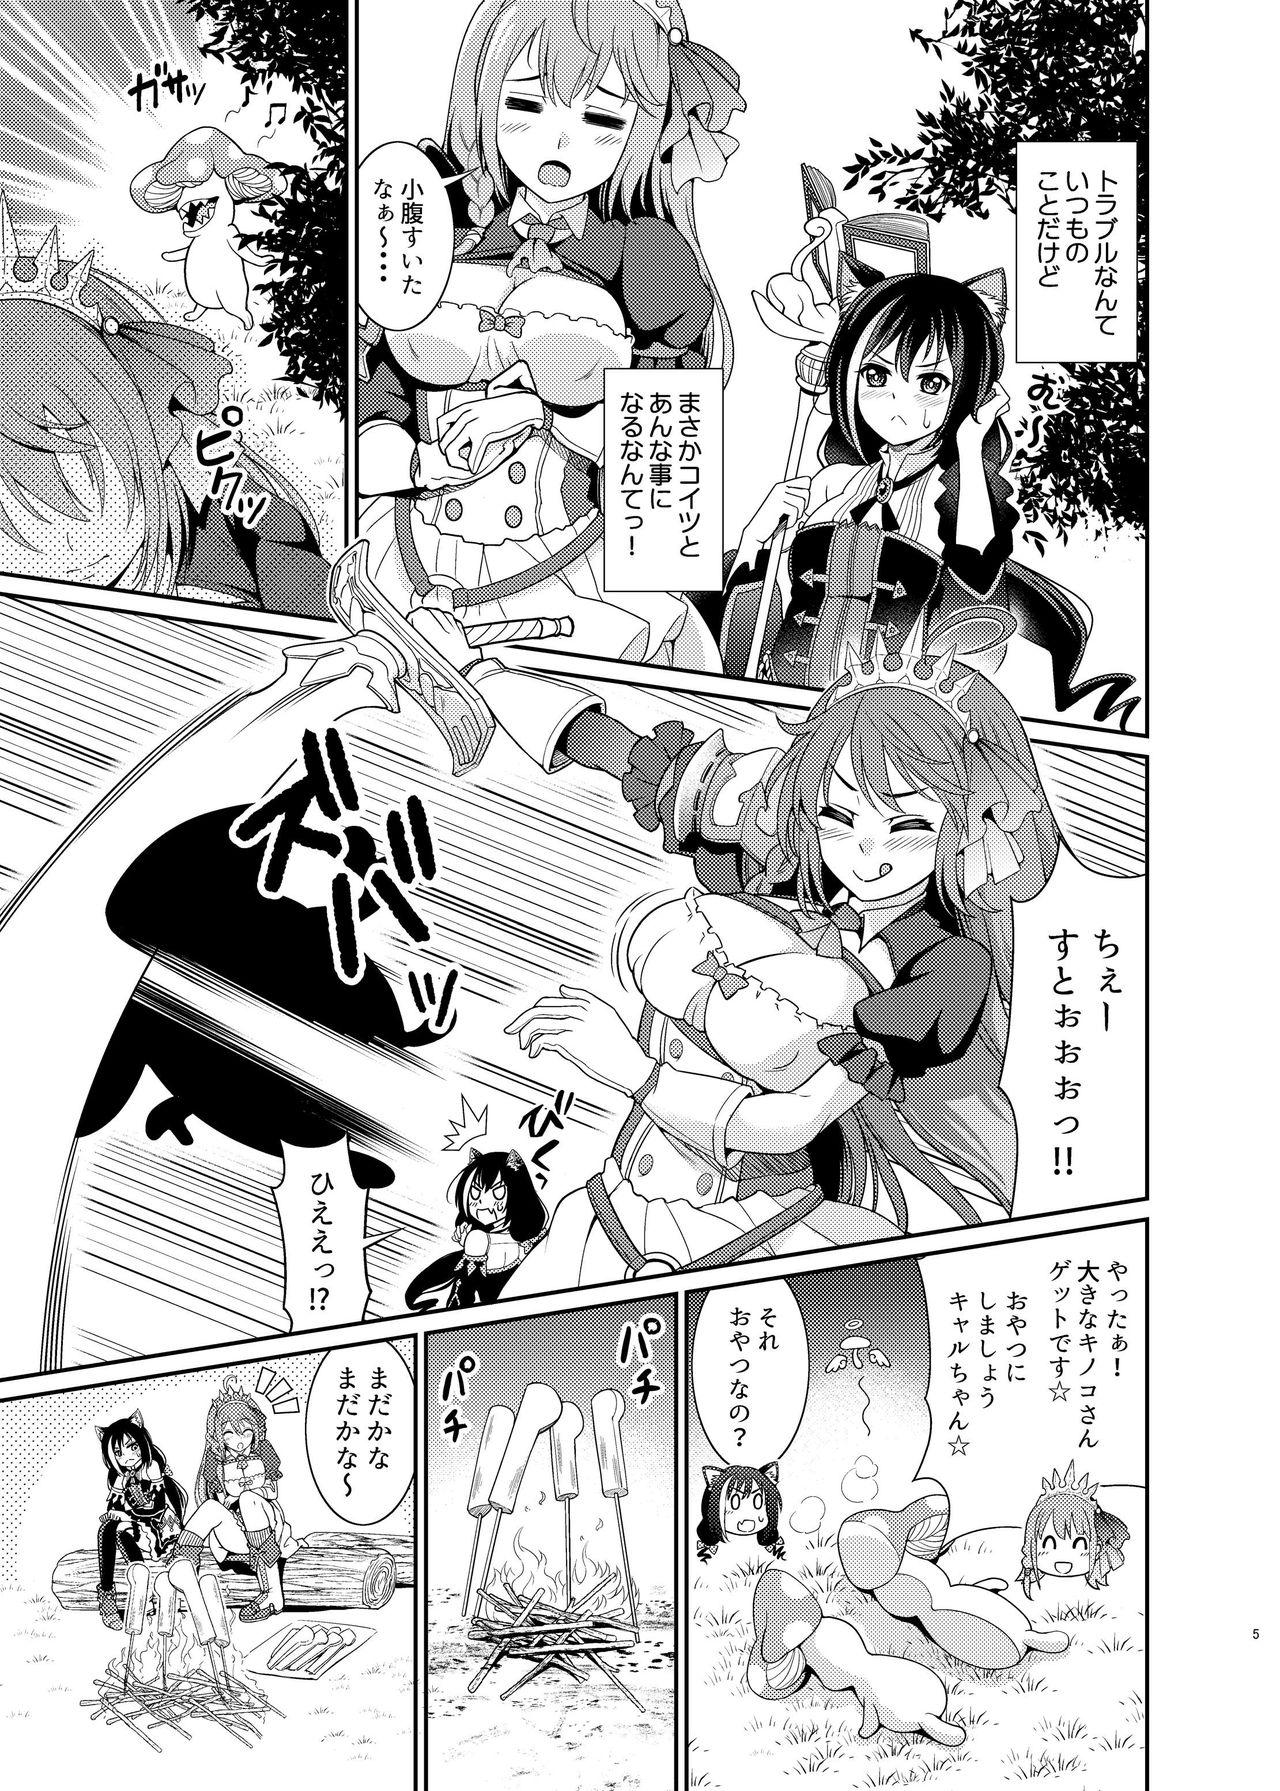 Licking Mamono Nante Tabaru Kara ... Ochinchin ga Hae chaunoyo!! - Princess connect Porn - Page 5